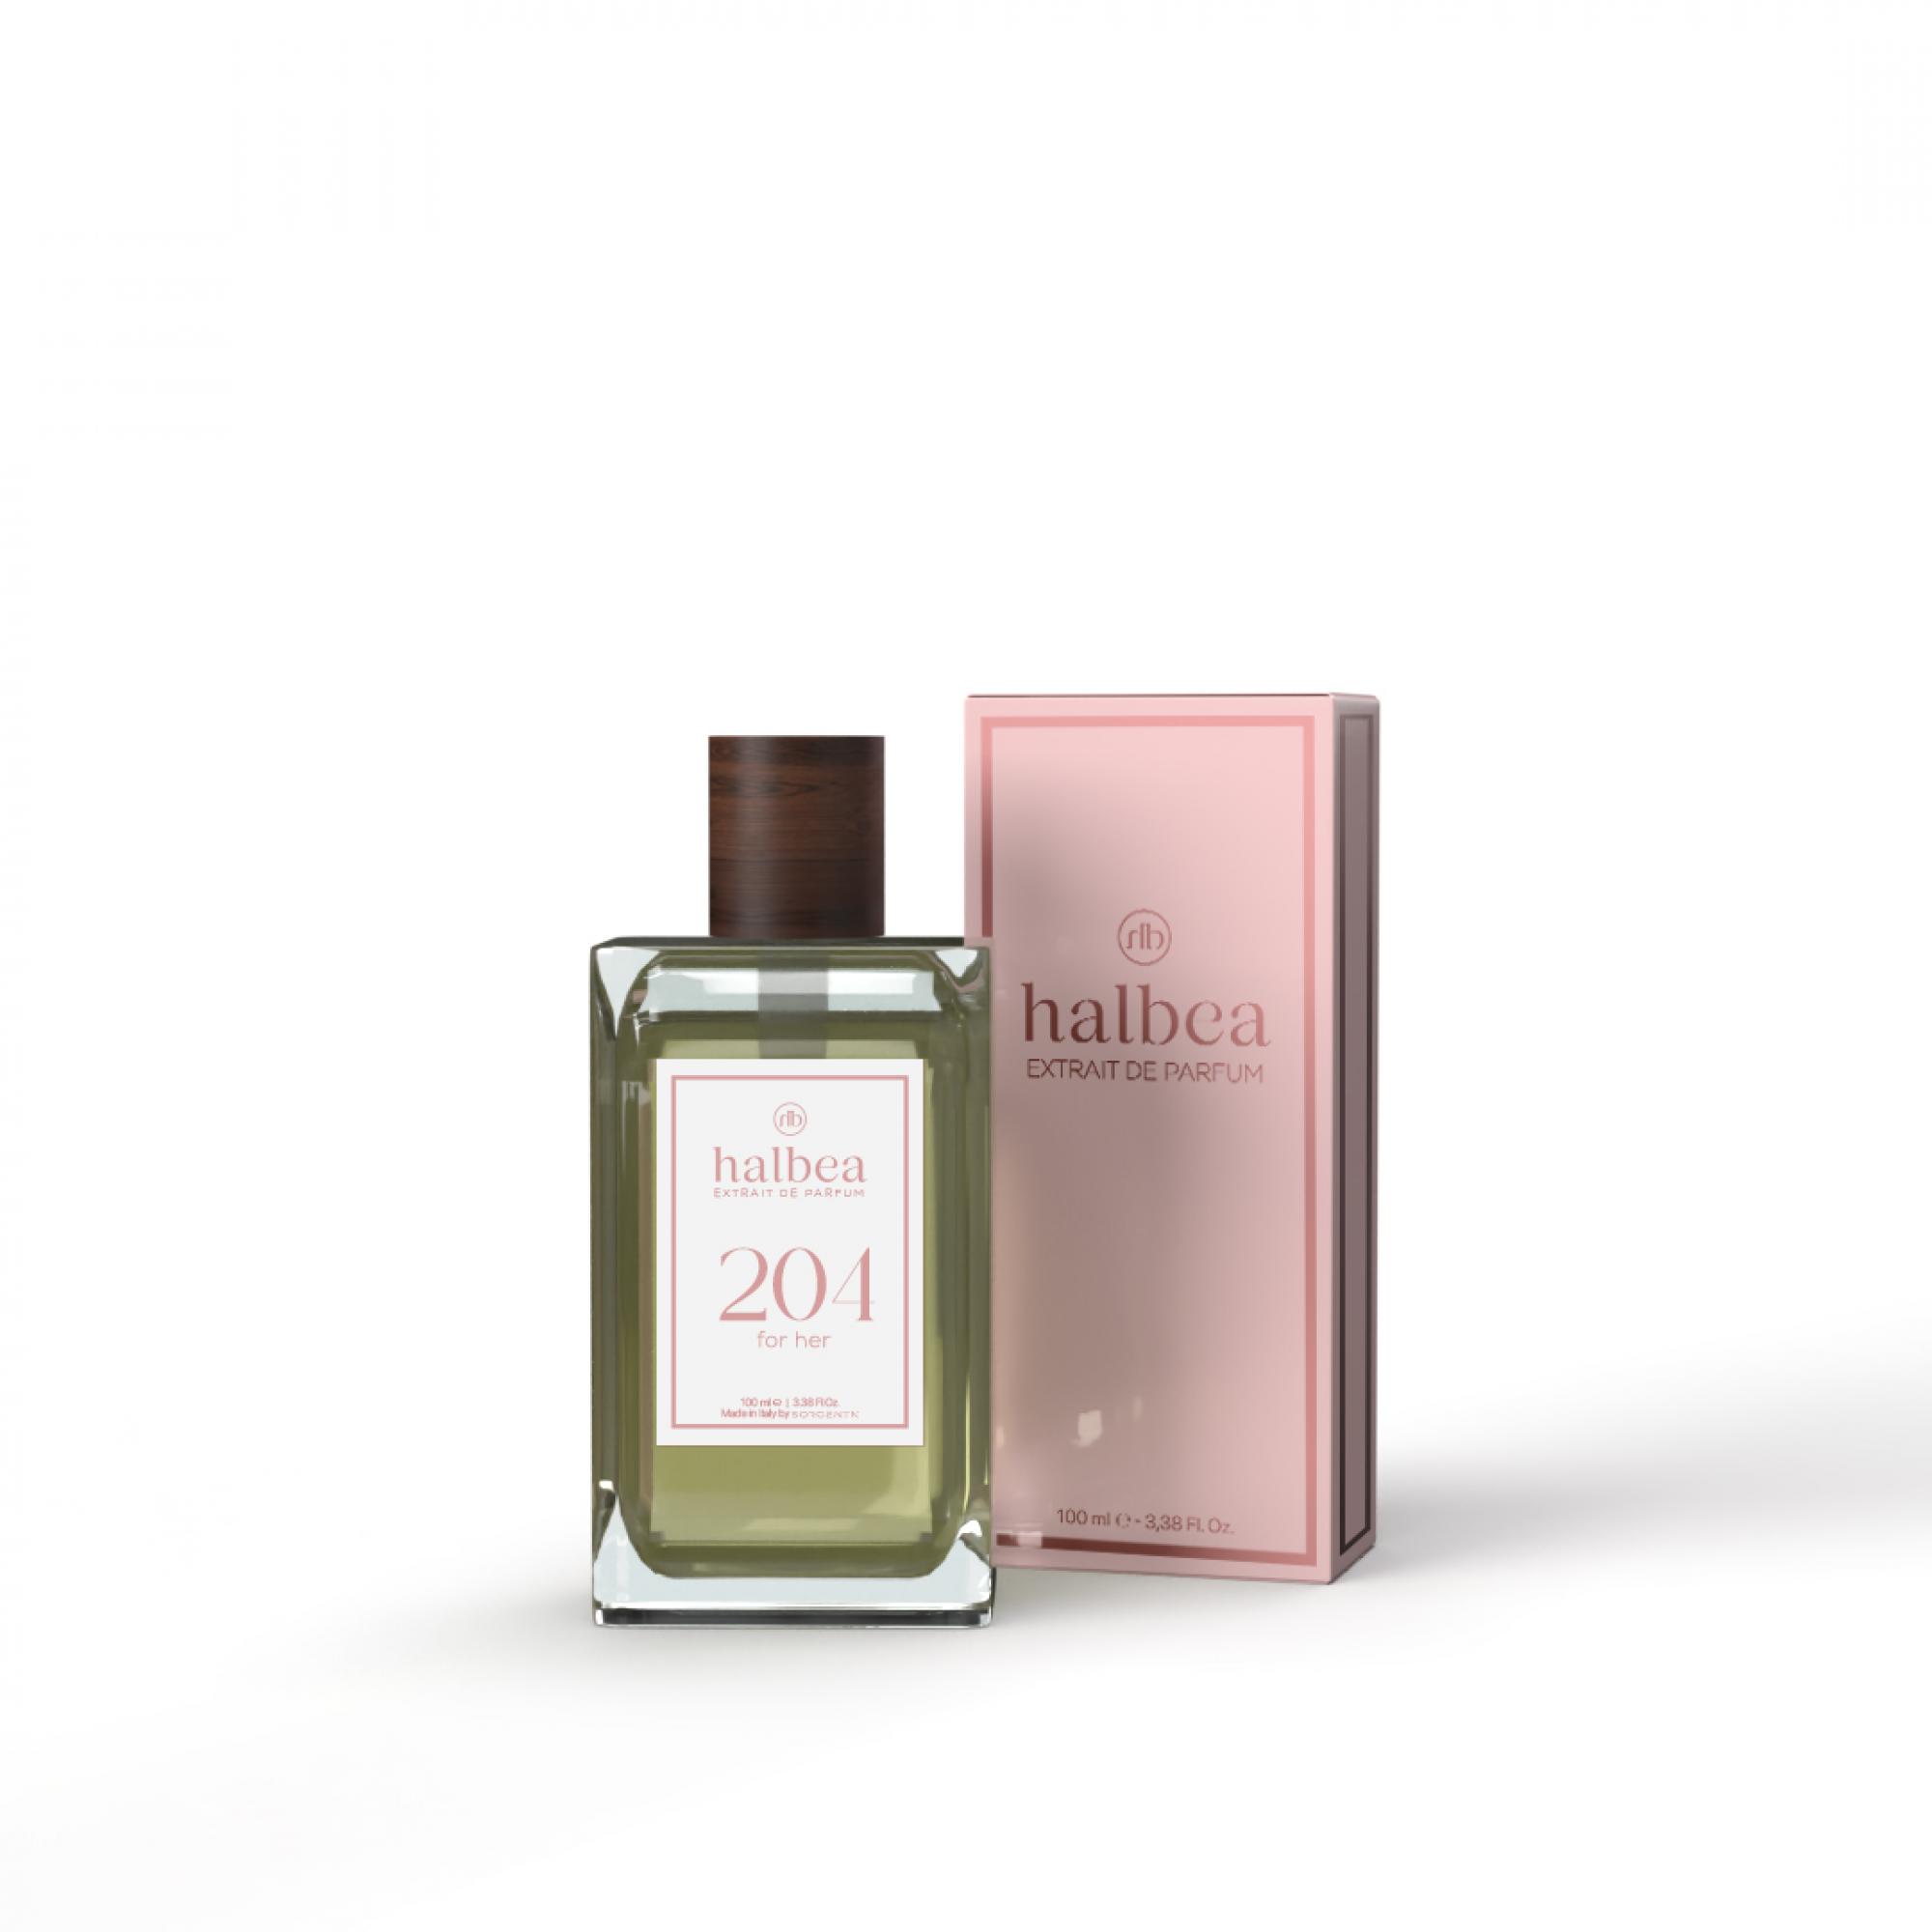  Halbea Parfum Nr. 204 insp. by Calvin Klein CK be Sorgenta 100ml